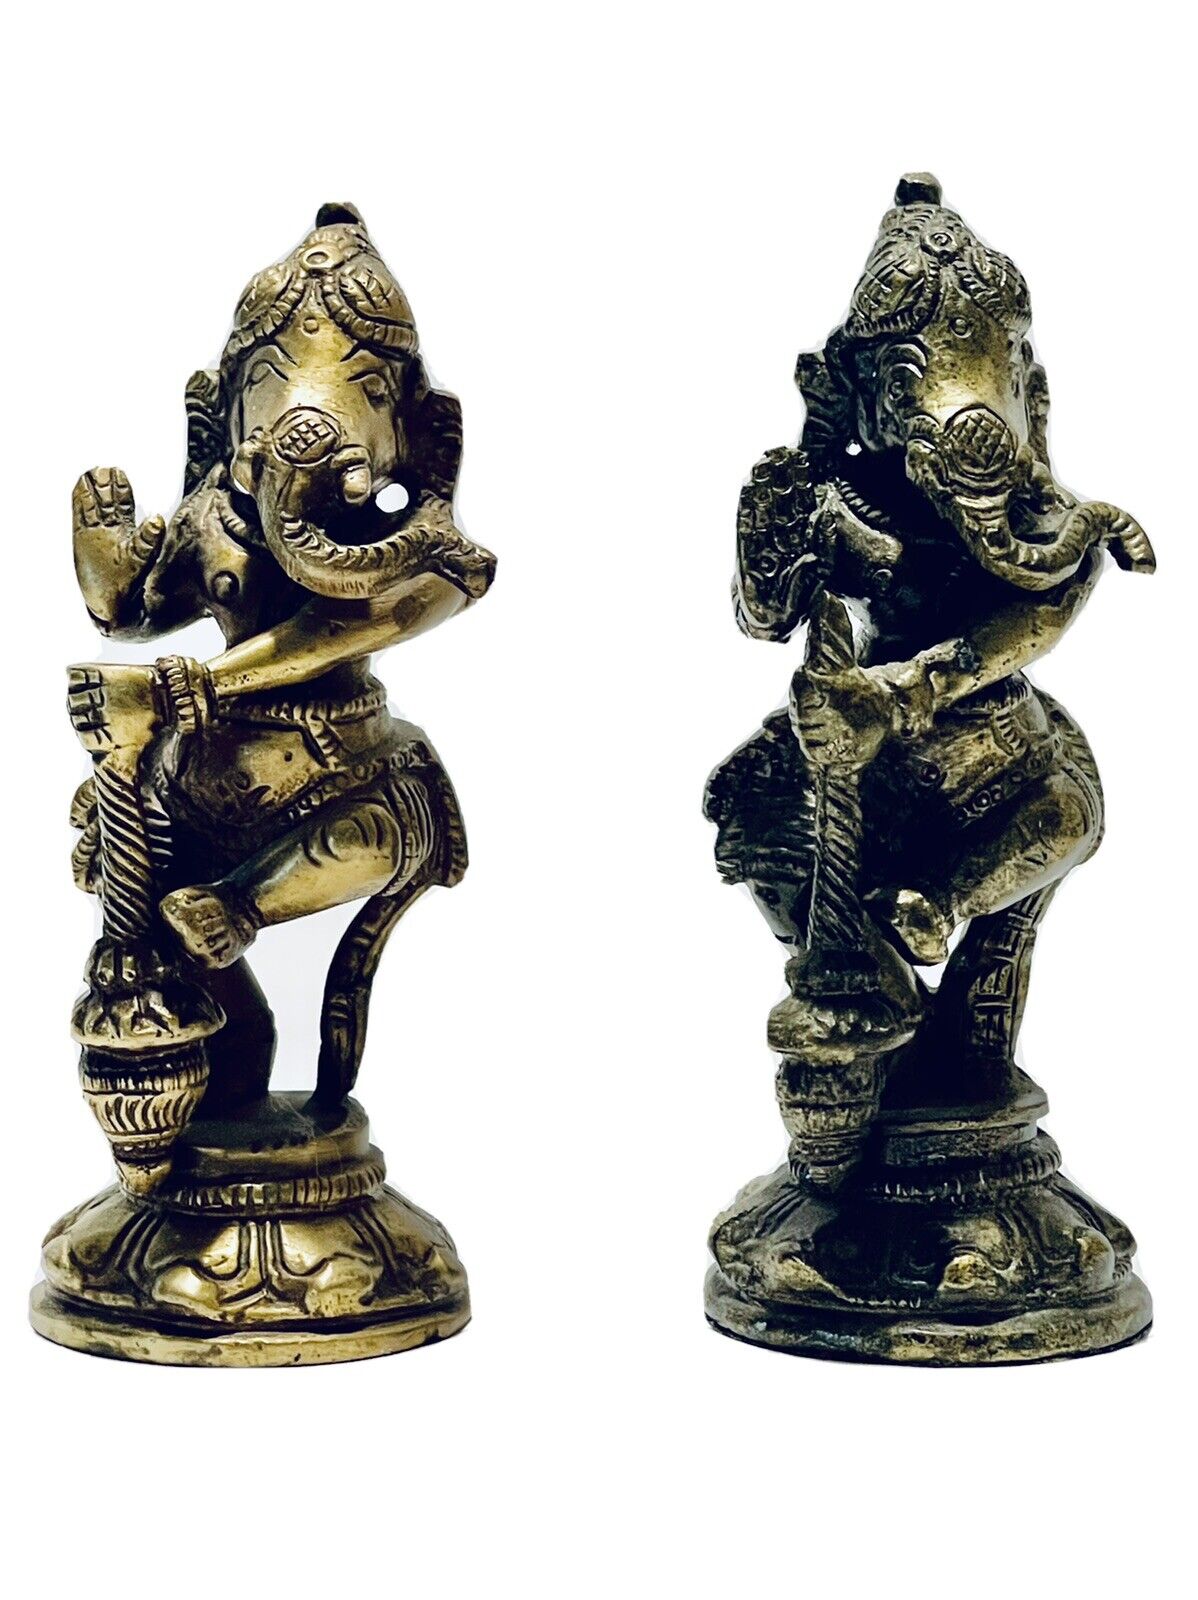 Marvelous Very Ornate Vintage Pair Of Ganesha Bronze Figurines